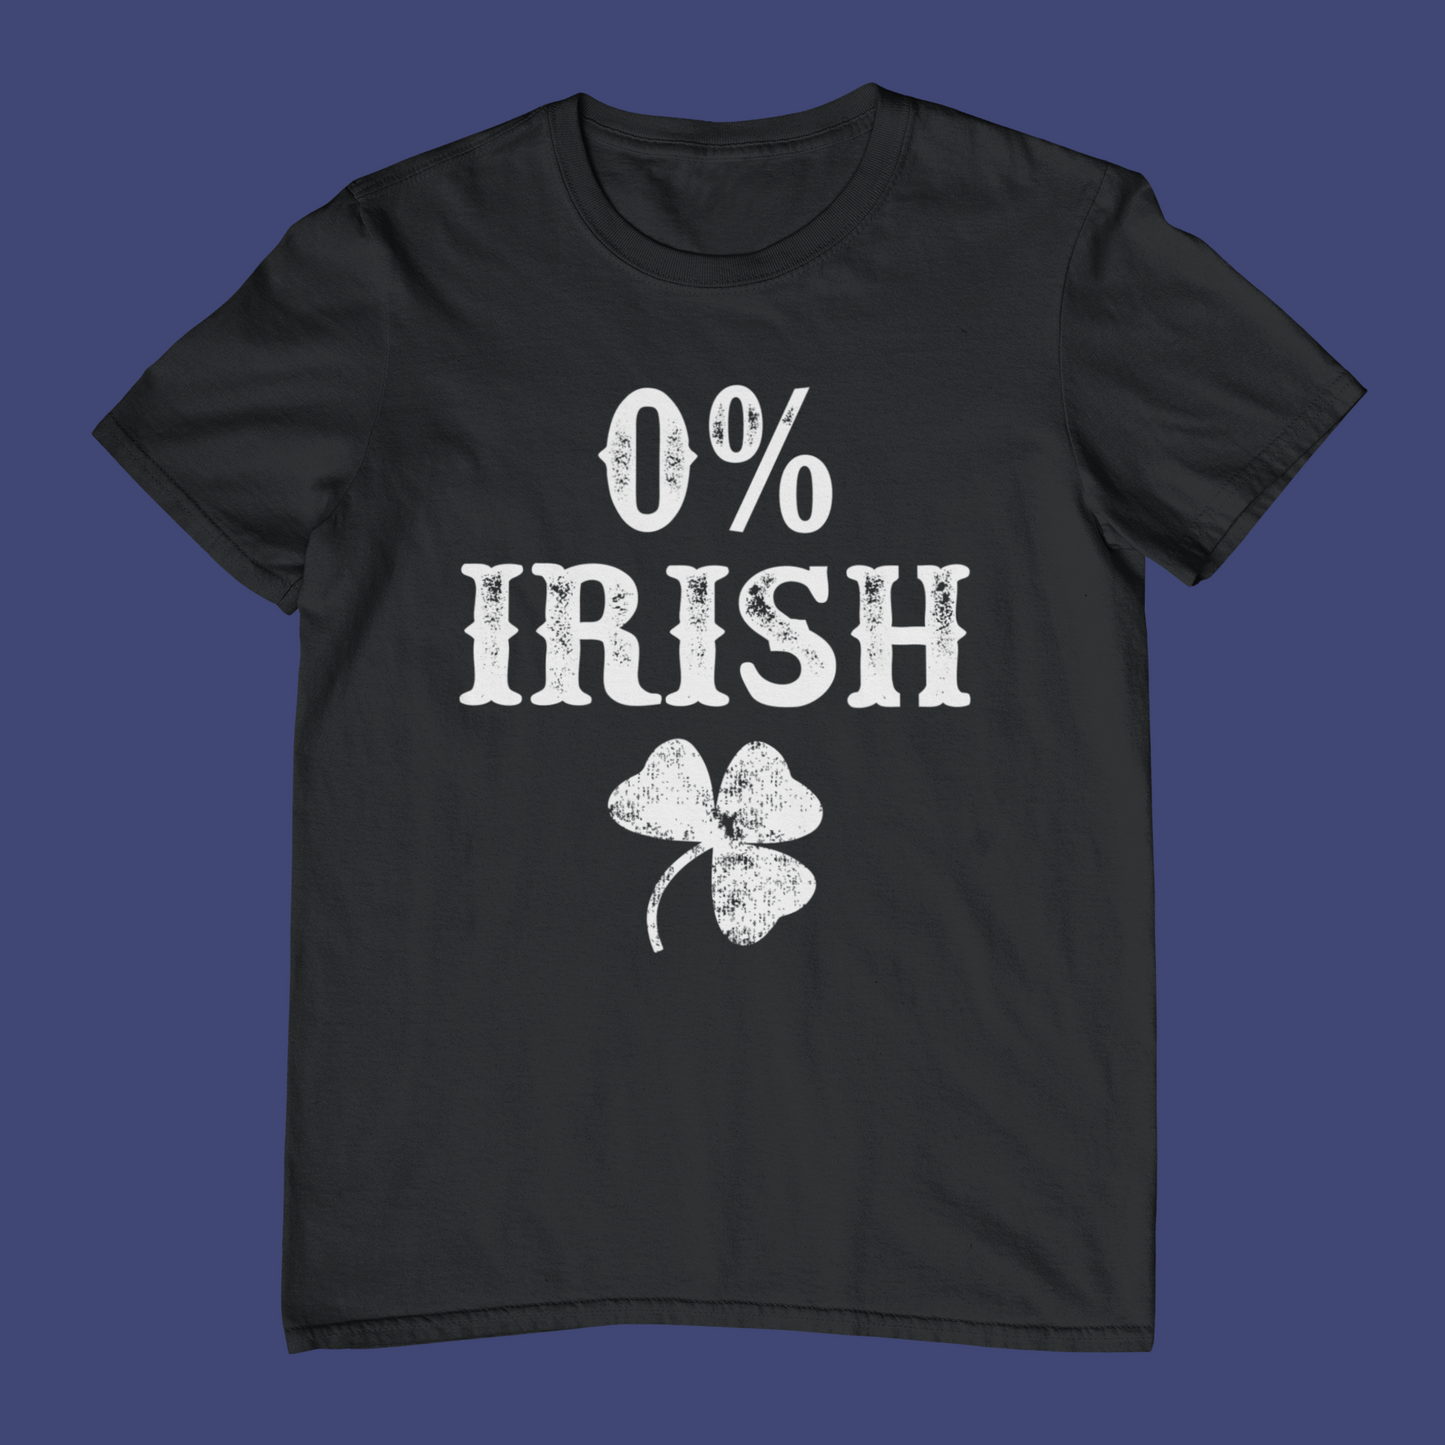 0% Irish